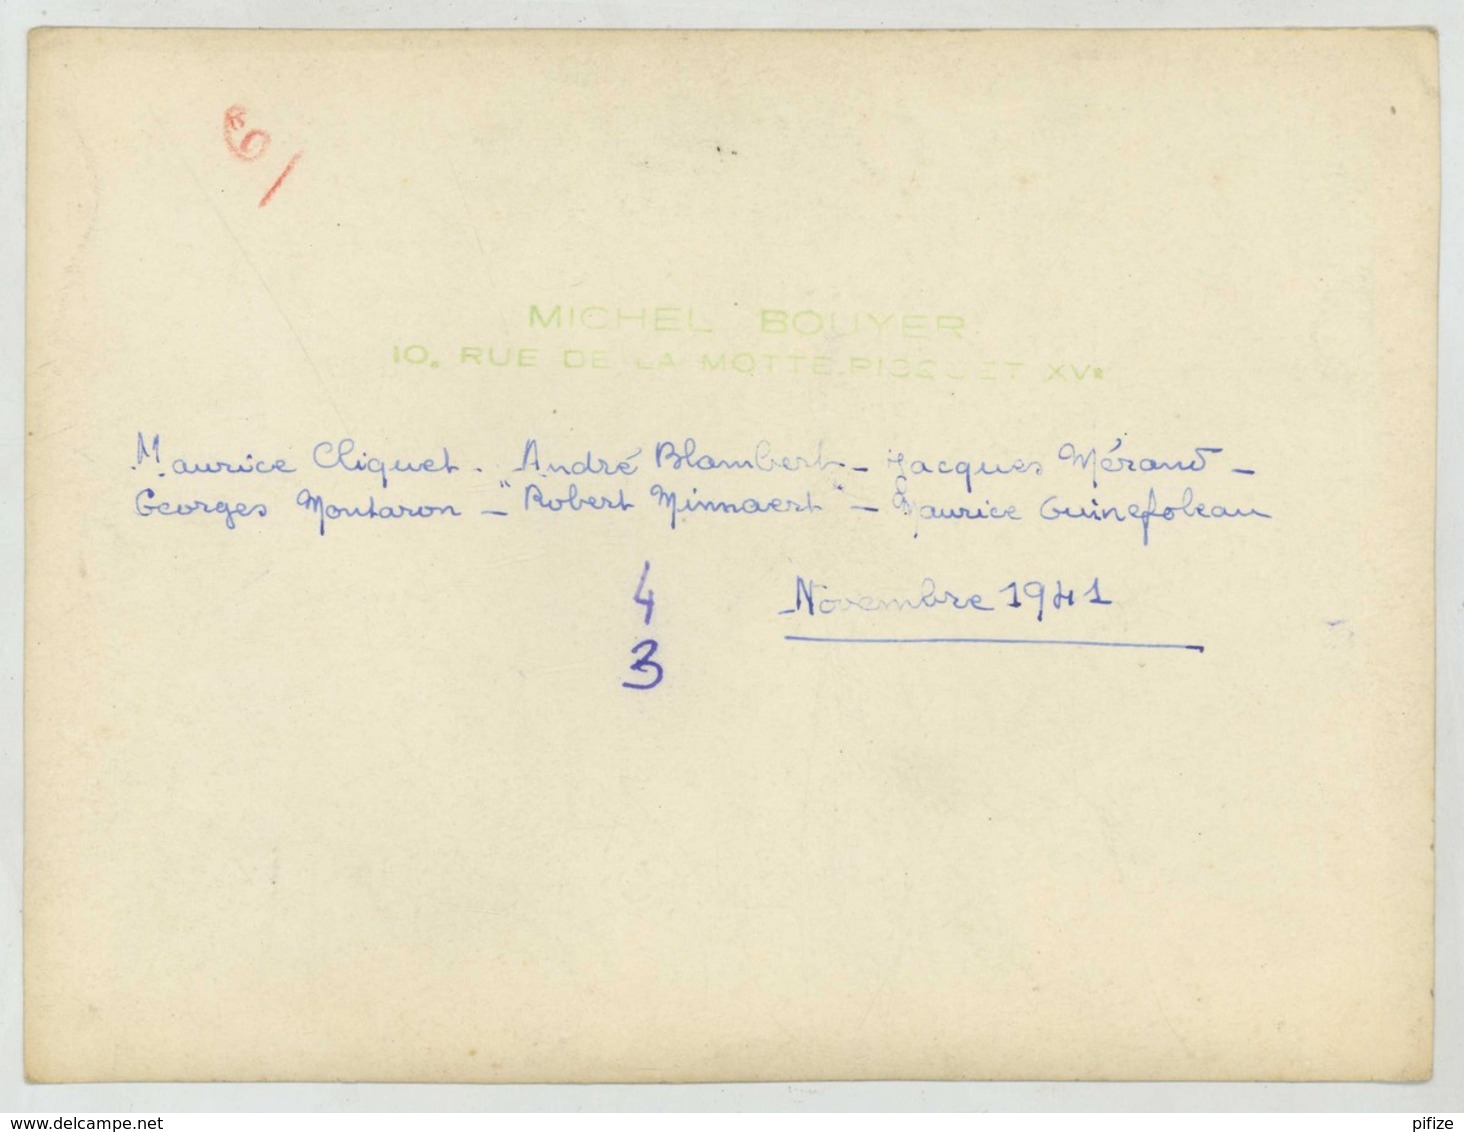 Comité Jeunesse Nouvelle , émanation De La JOC . Maurice Cliquet André Blambert Georges Montaron . Nov. 1941 . Vichy . - Personnes Identifiées